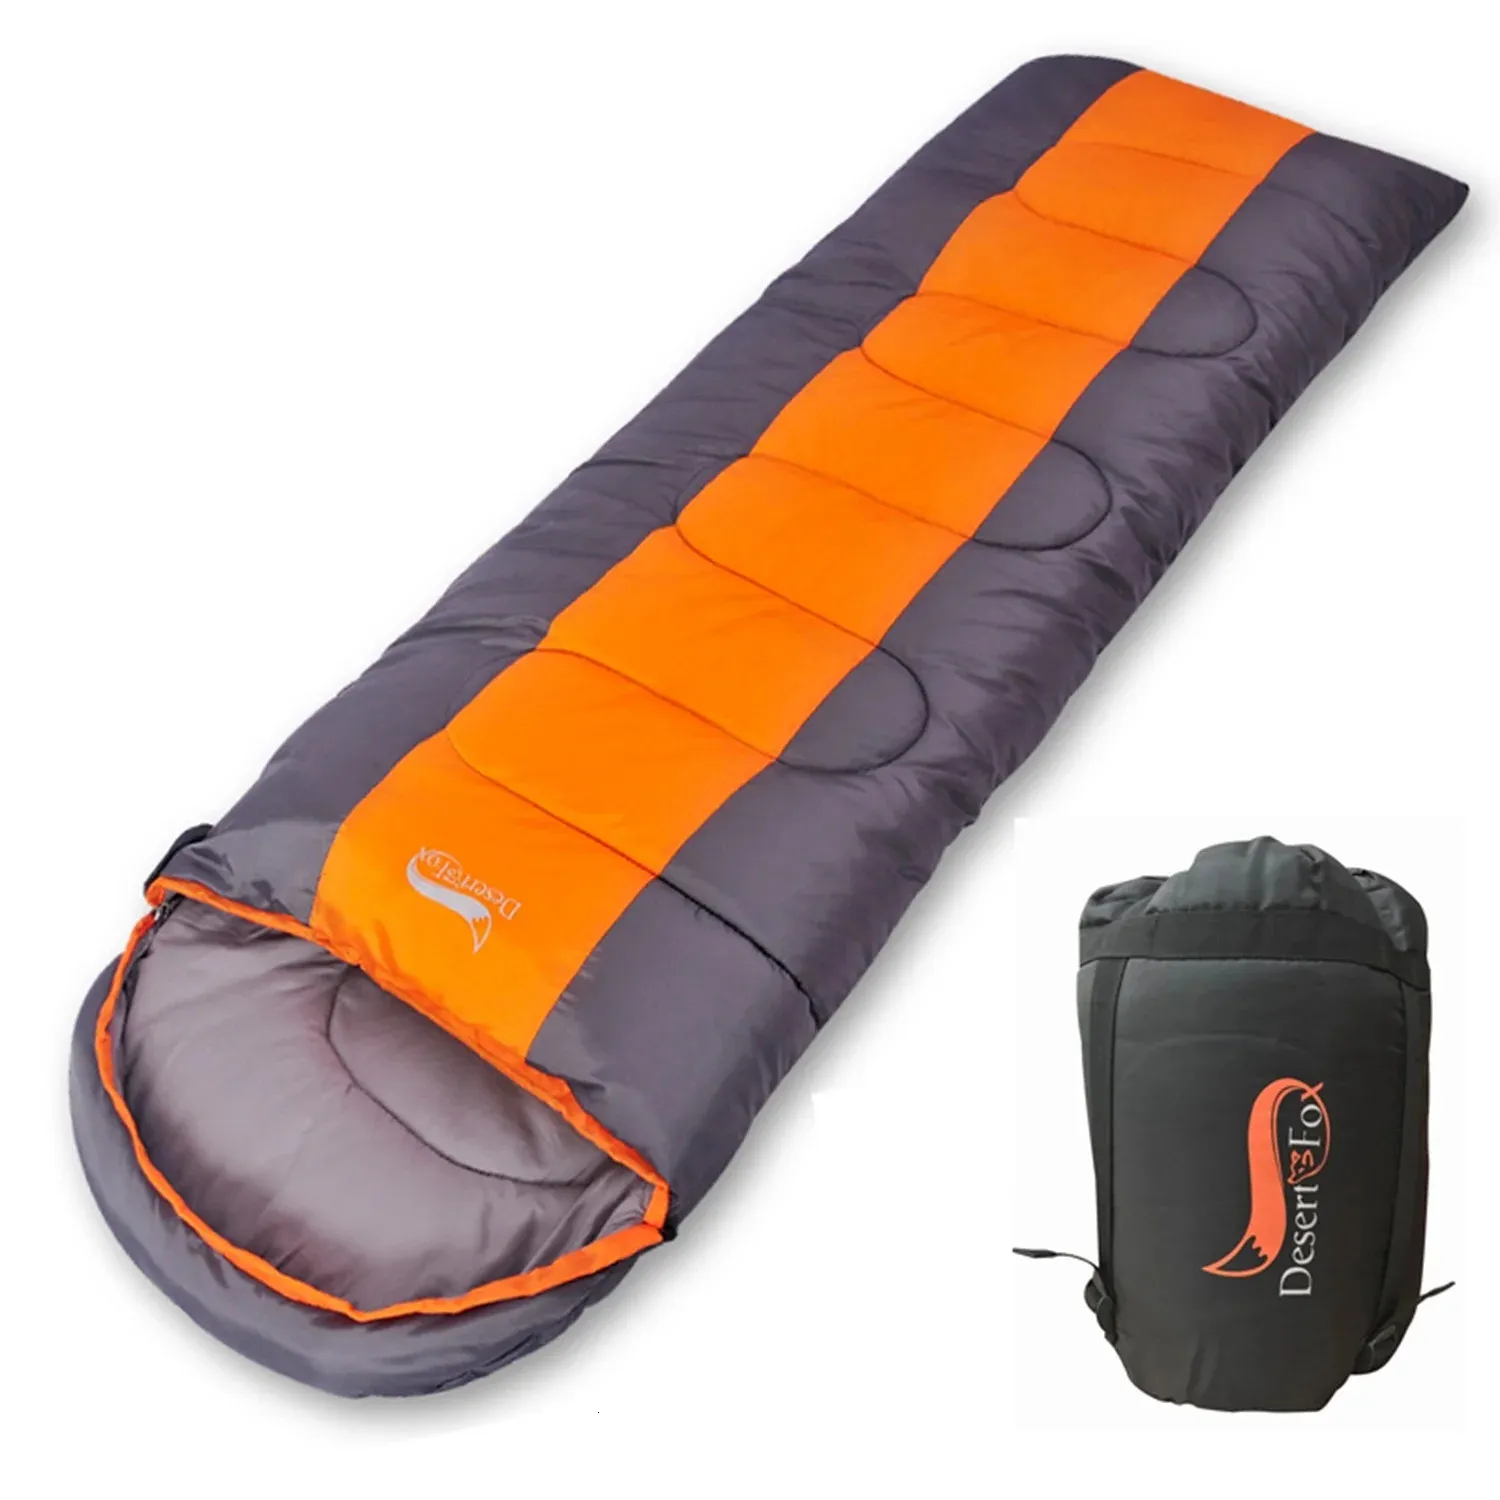 Desert Fox Camping Sleeping Bag 220x85cm Envelope waterdichte shell lichtgewicht compressiezak voor wandelreizen 240416